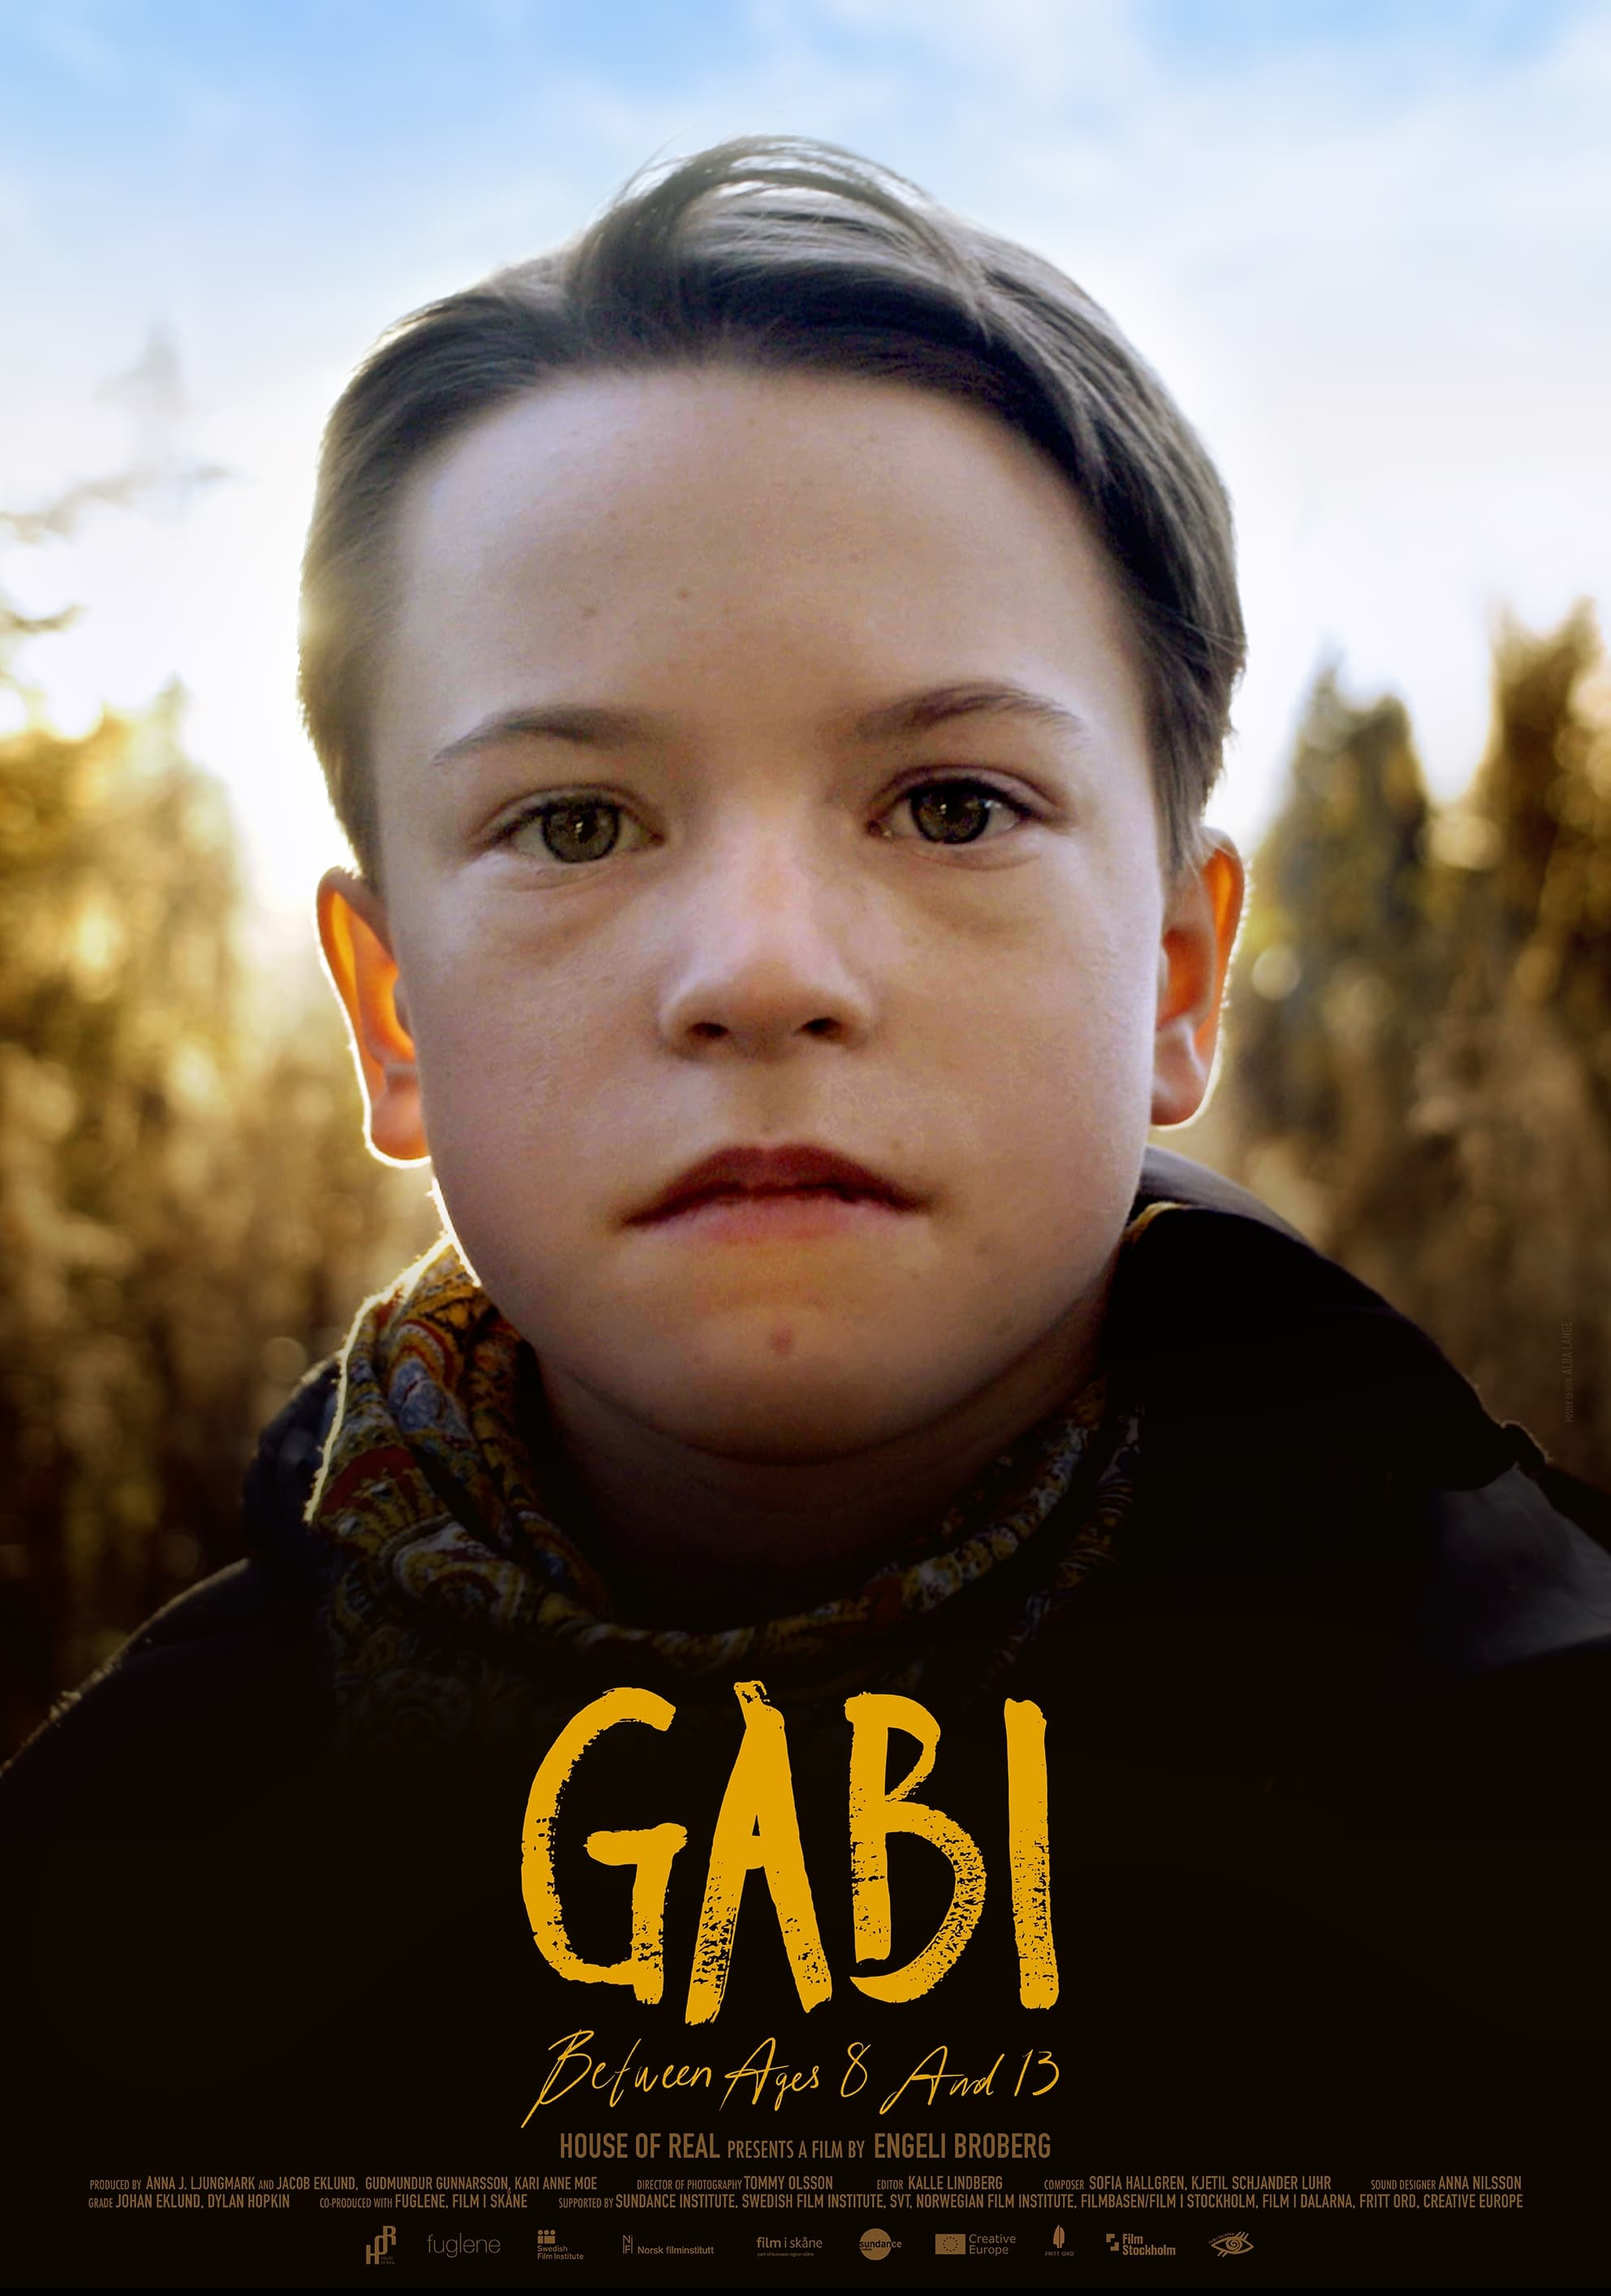 Caratula de Gabi, mellan åren 8 och 13 (Gabi, de los 8 a los 13 años) 